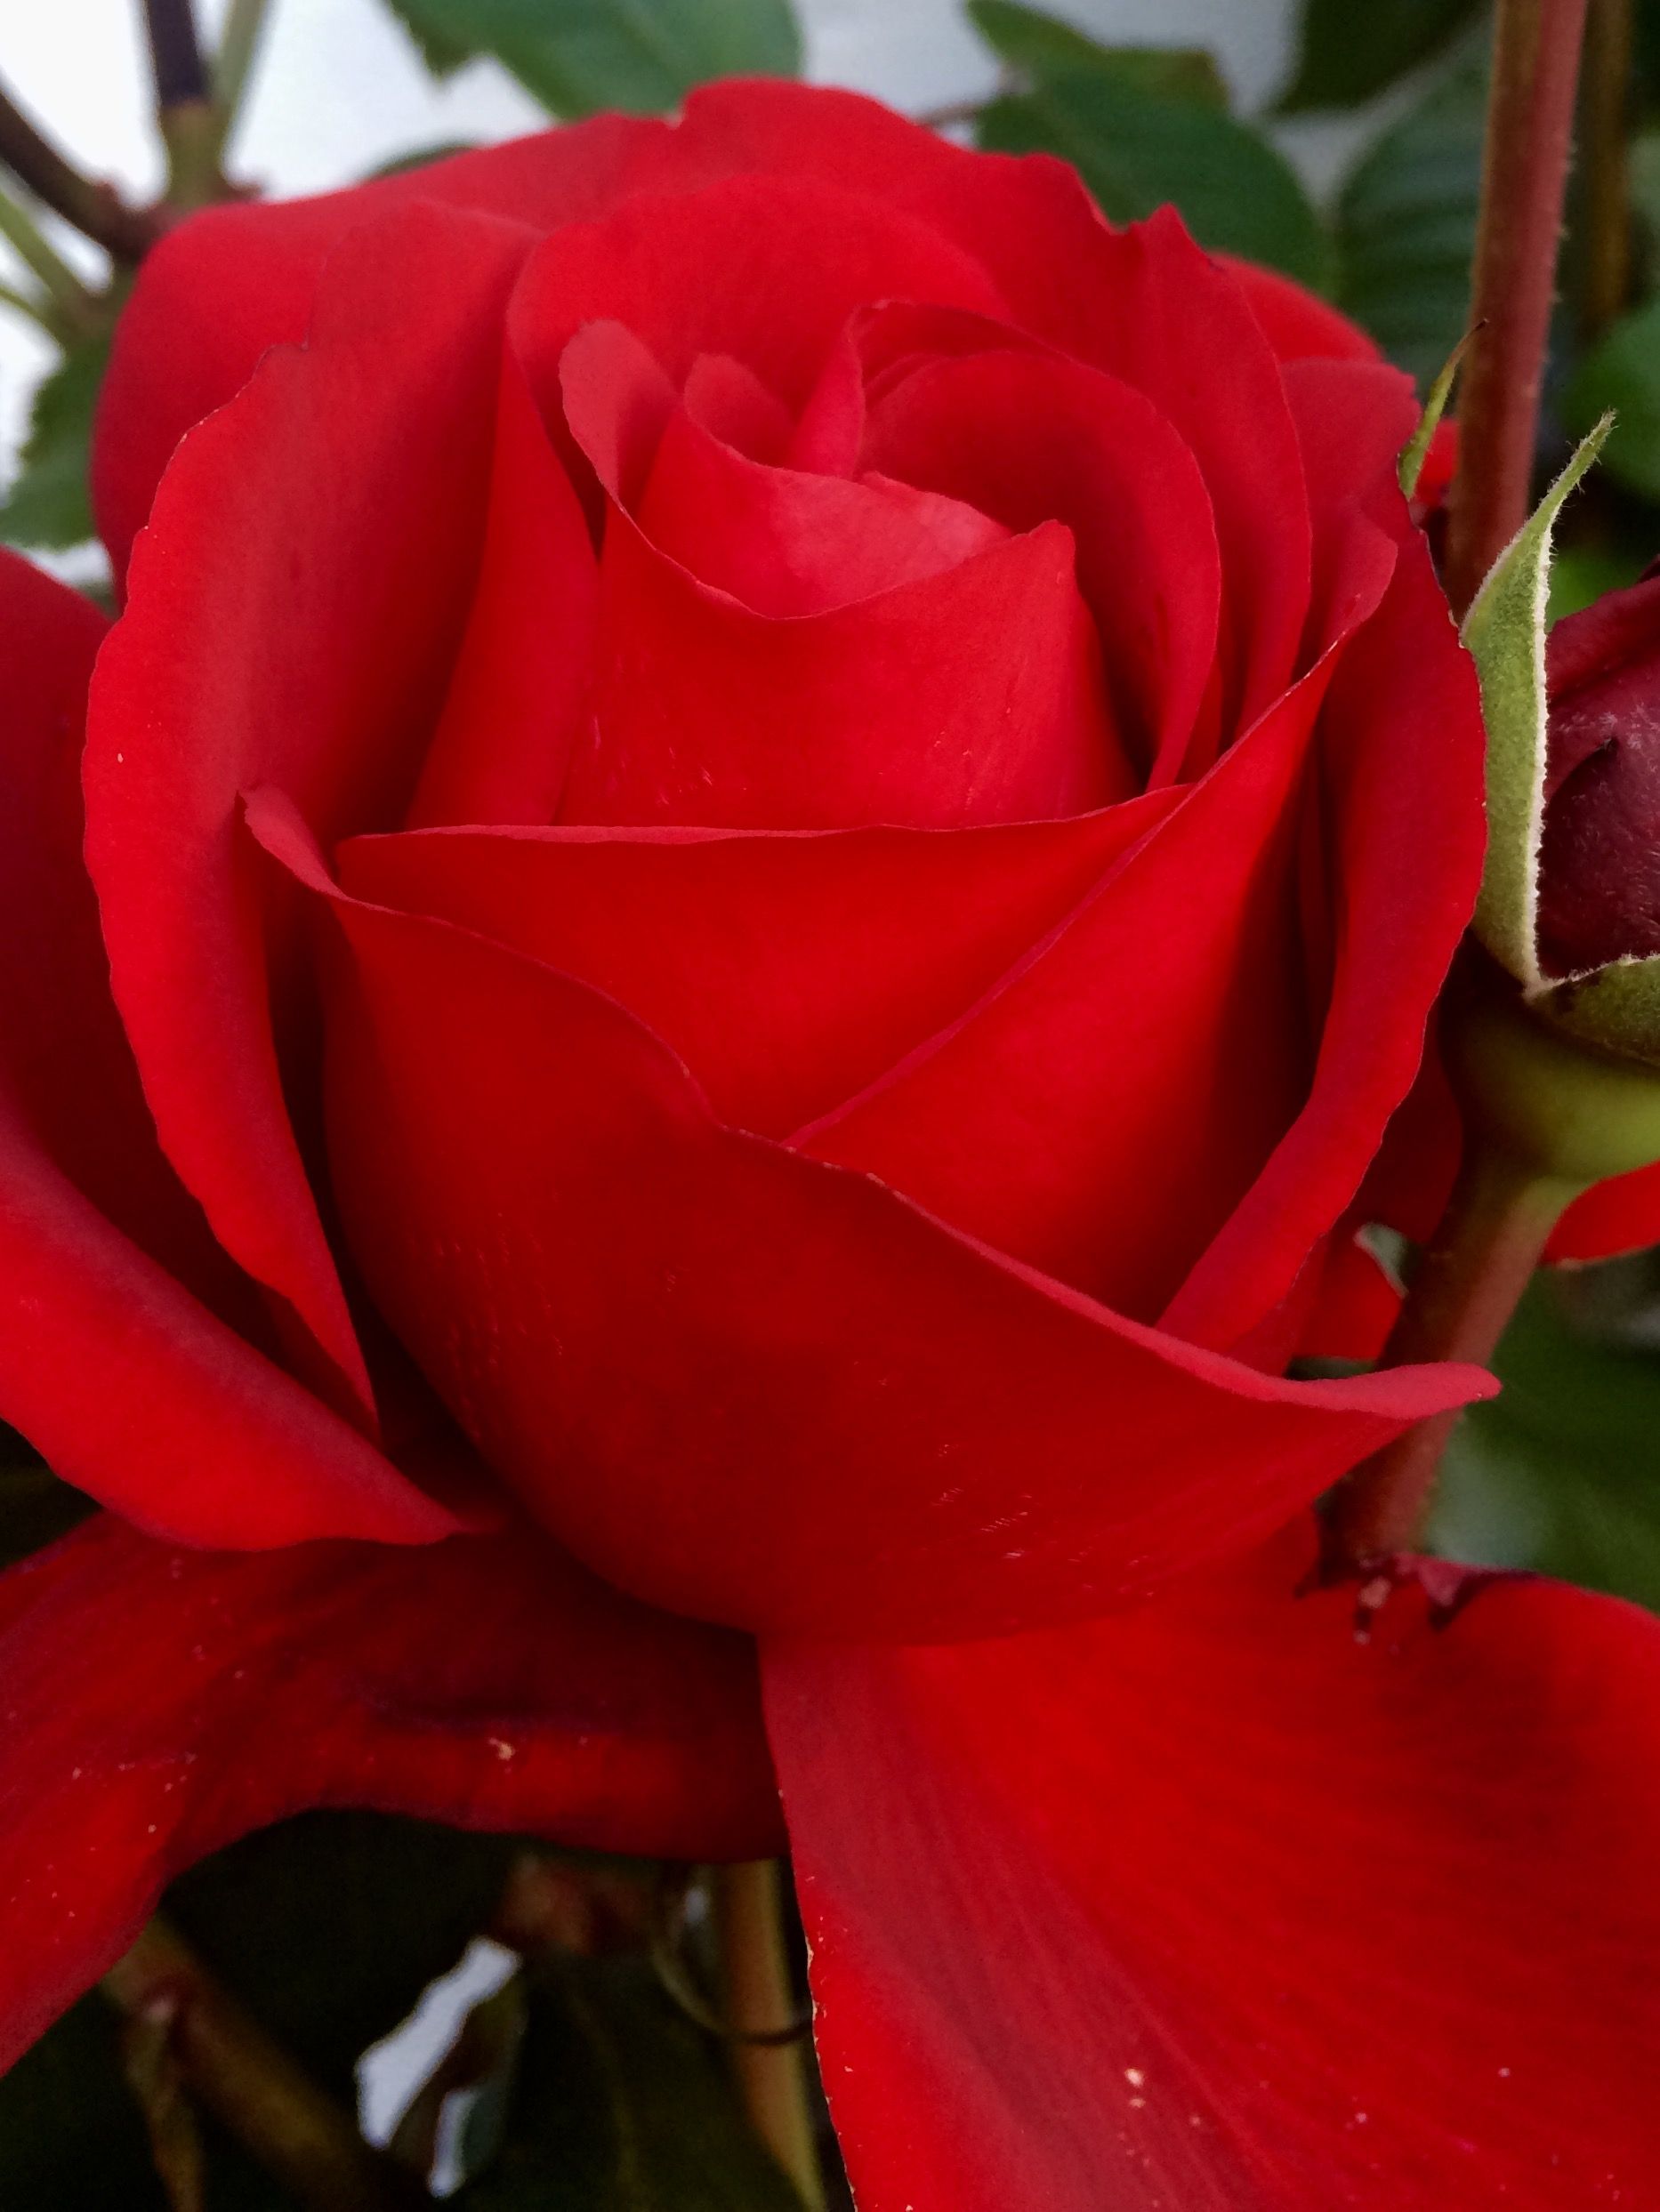 Картинки на рабочий стол цветы самые красивые розы